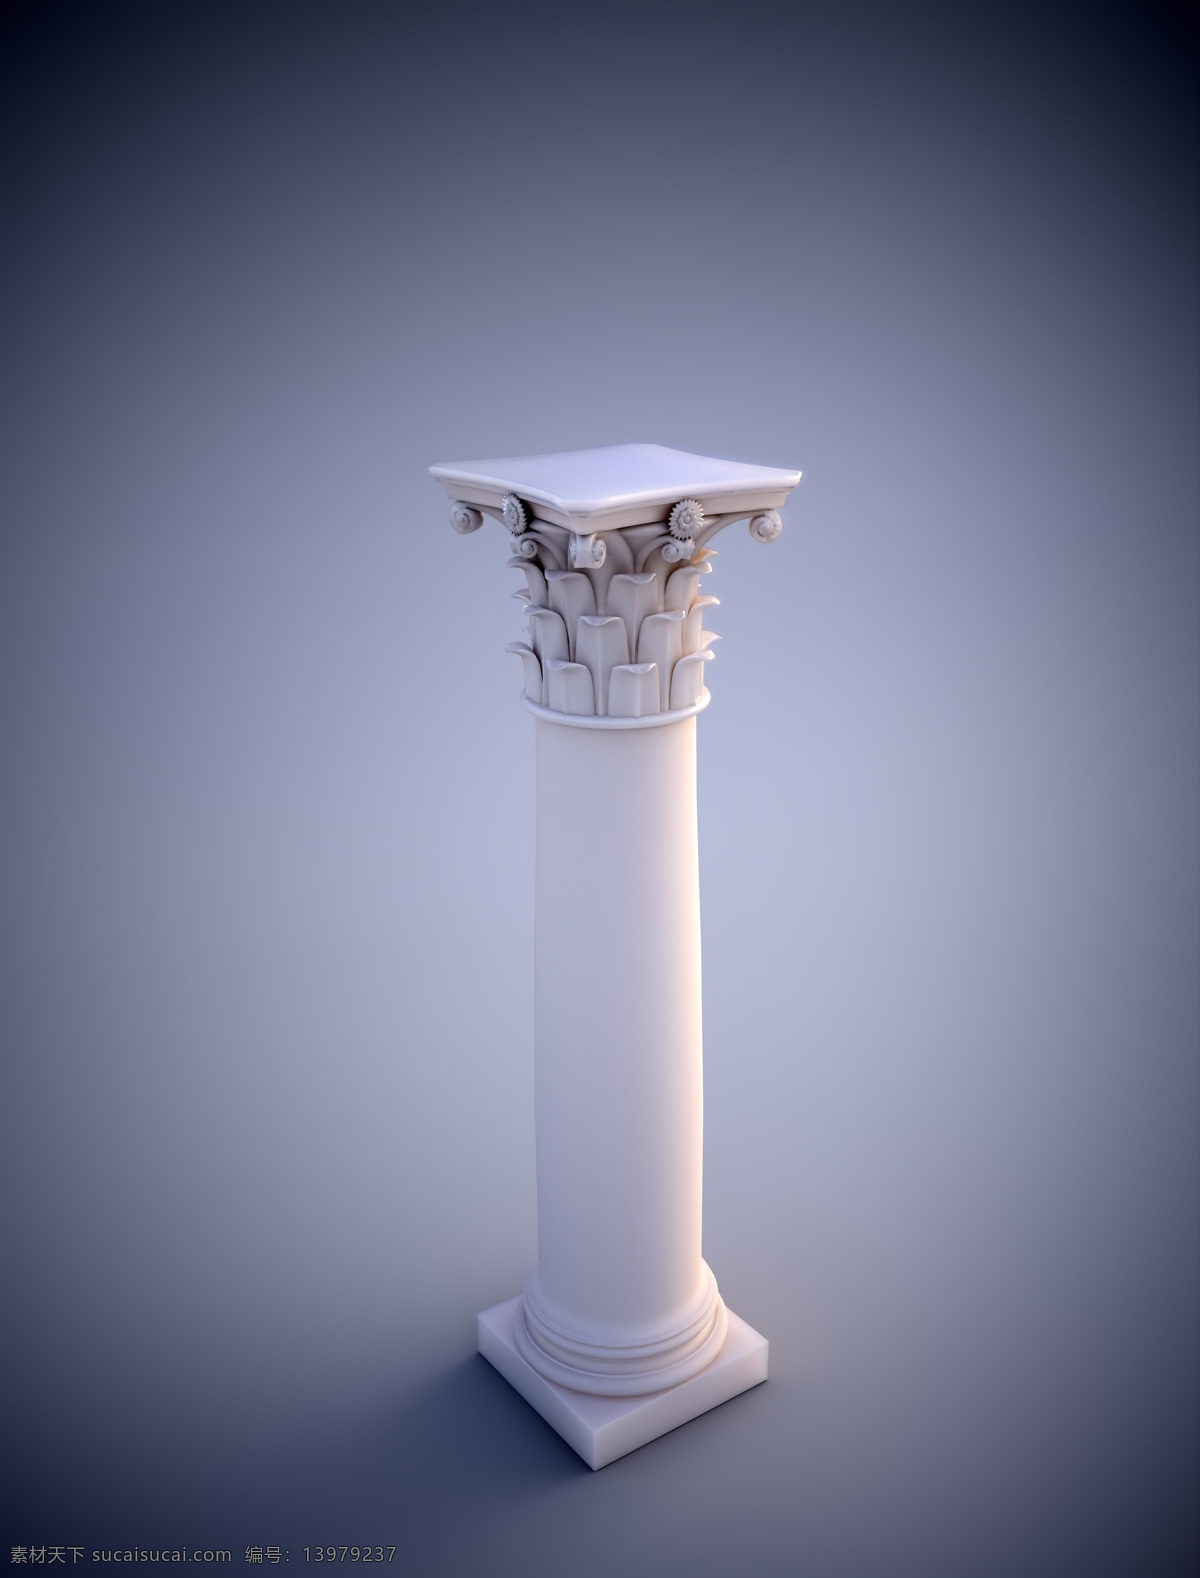 石柱高清 白色 底座 雕刻 浮雕 复古 宫廷 古典 建筑 建筑物 渐变背景 石柱 柱子 圆柱 欧式 椭圆形 精致 细腻 txyuu